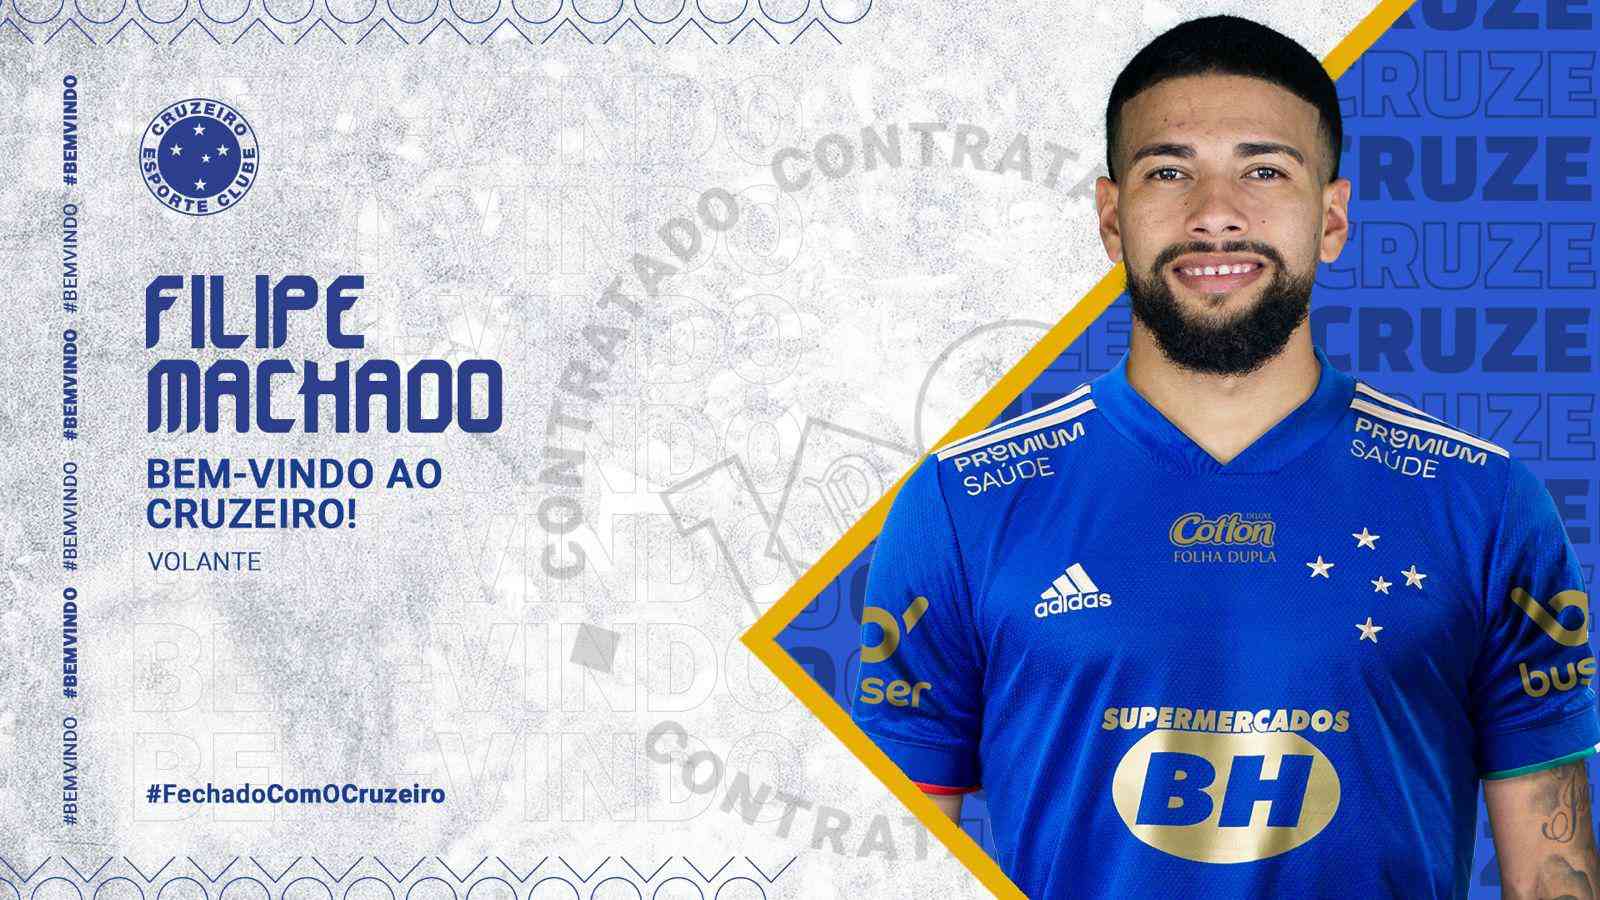 Filipe leva Cruzeiro a título mundial no 5º mês de carreira como técnico -  15/12/2021 - UOL Esporte